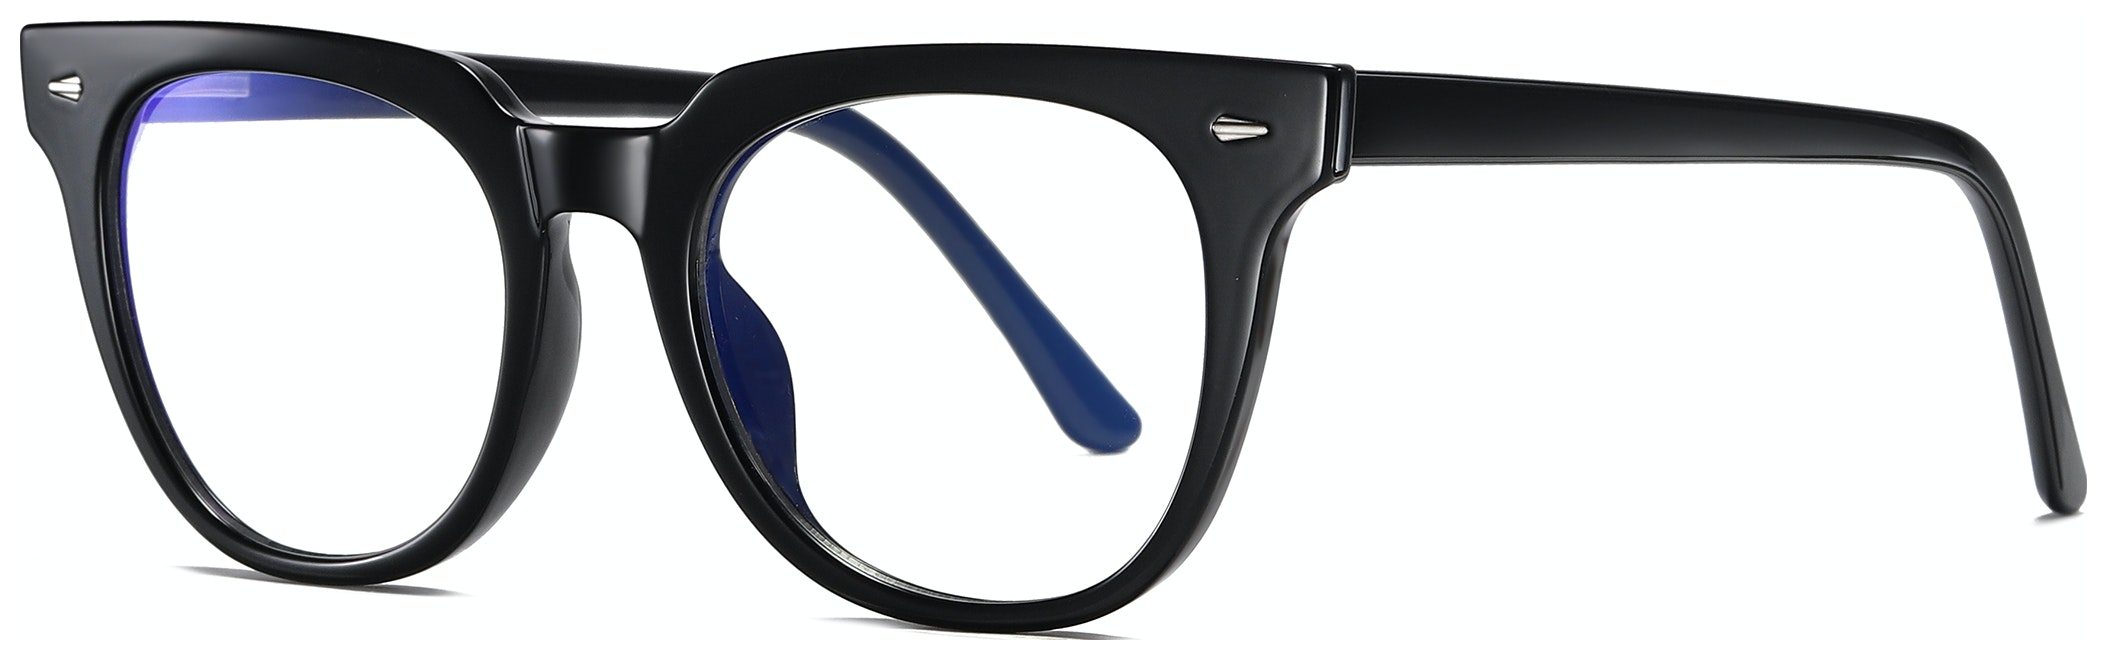 Billede af Regulær bluelight briller til kvinder, Crafter